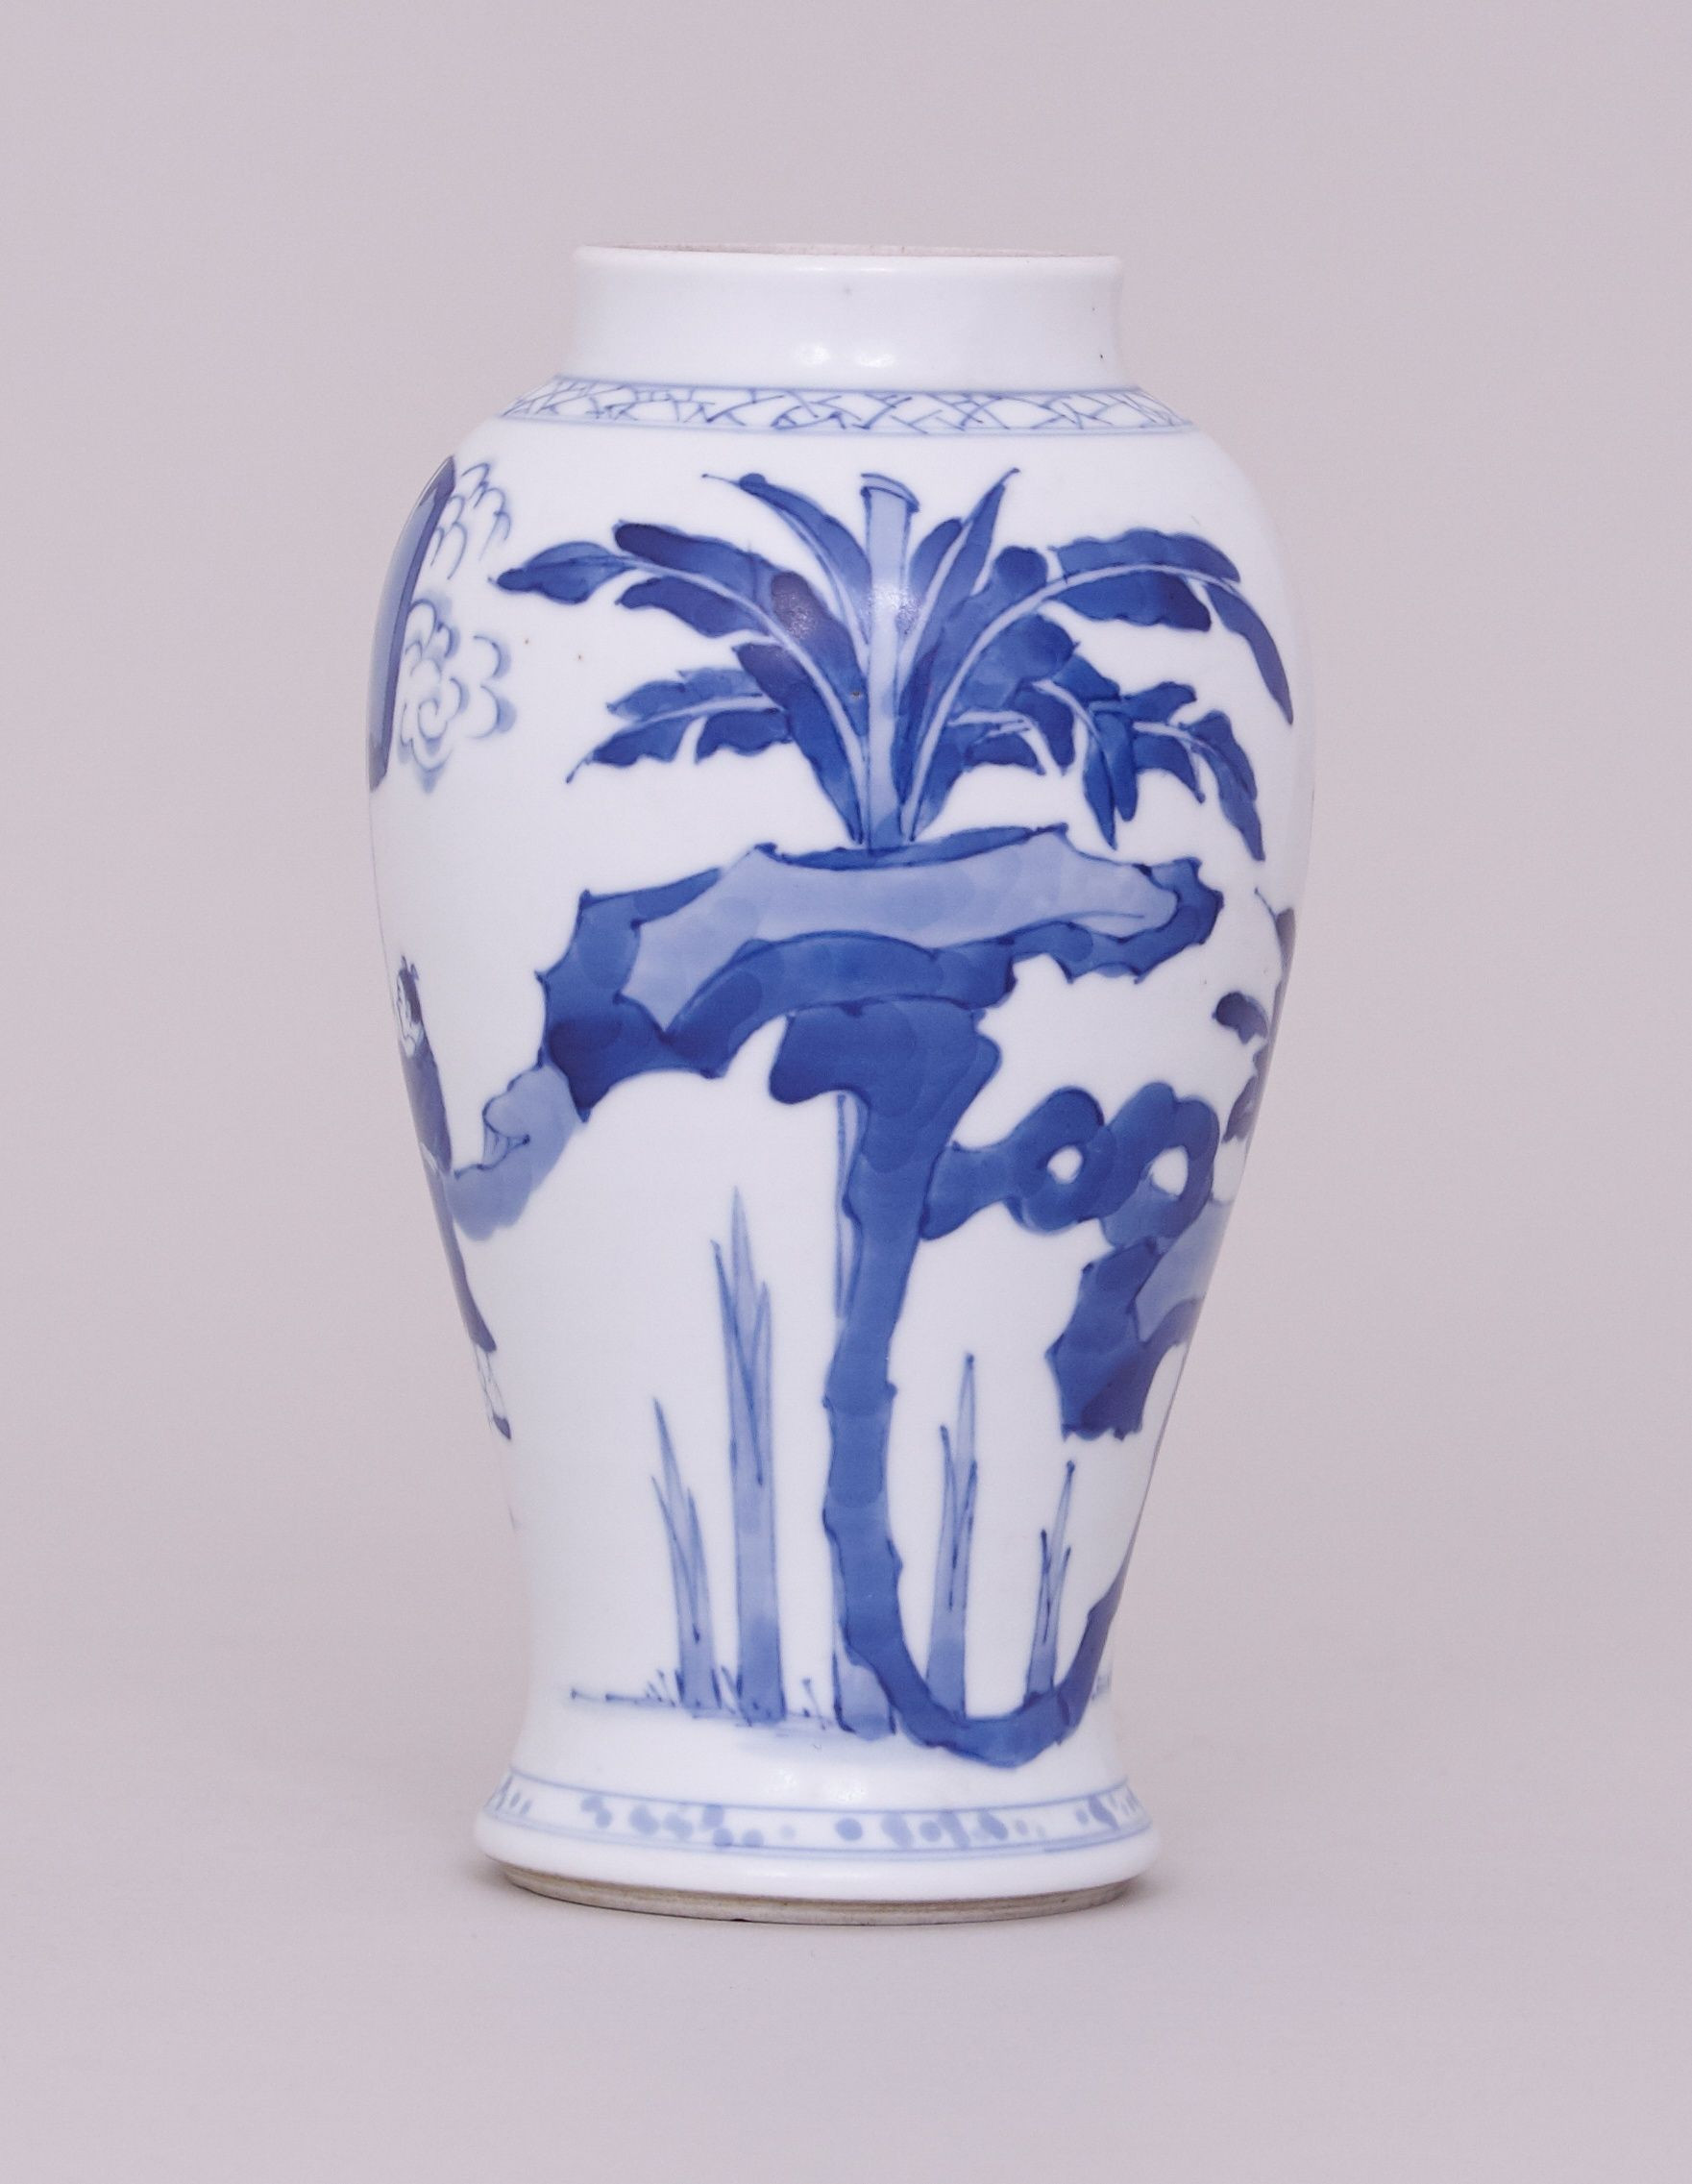 14 Lovable Blue Square Vase 2024 free download blue square vase of blue white vase lovely a chinese blue and white vase kangxi 1662 regarding blue white vase lovely a chinese blue and white vase kangxi 1662 1722